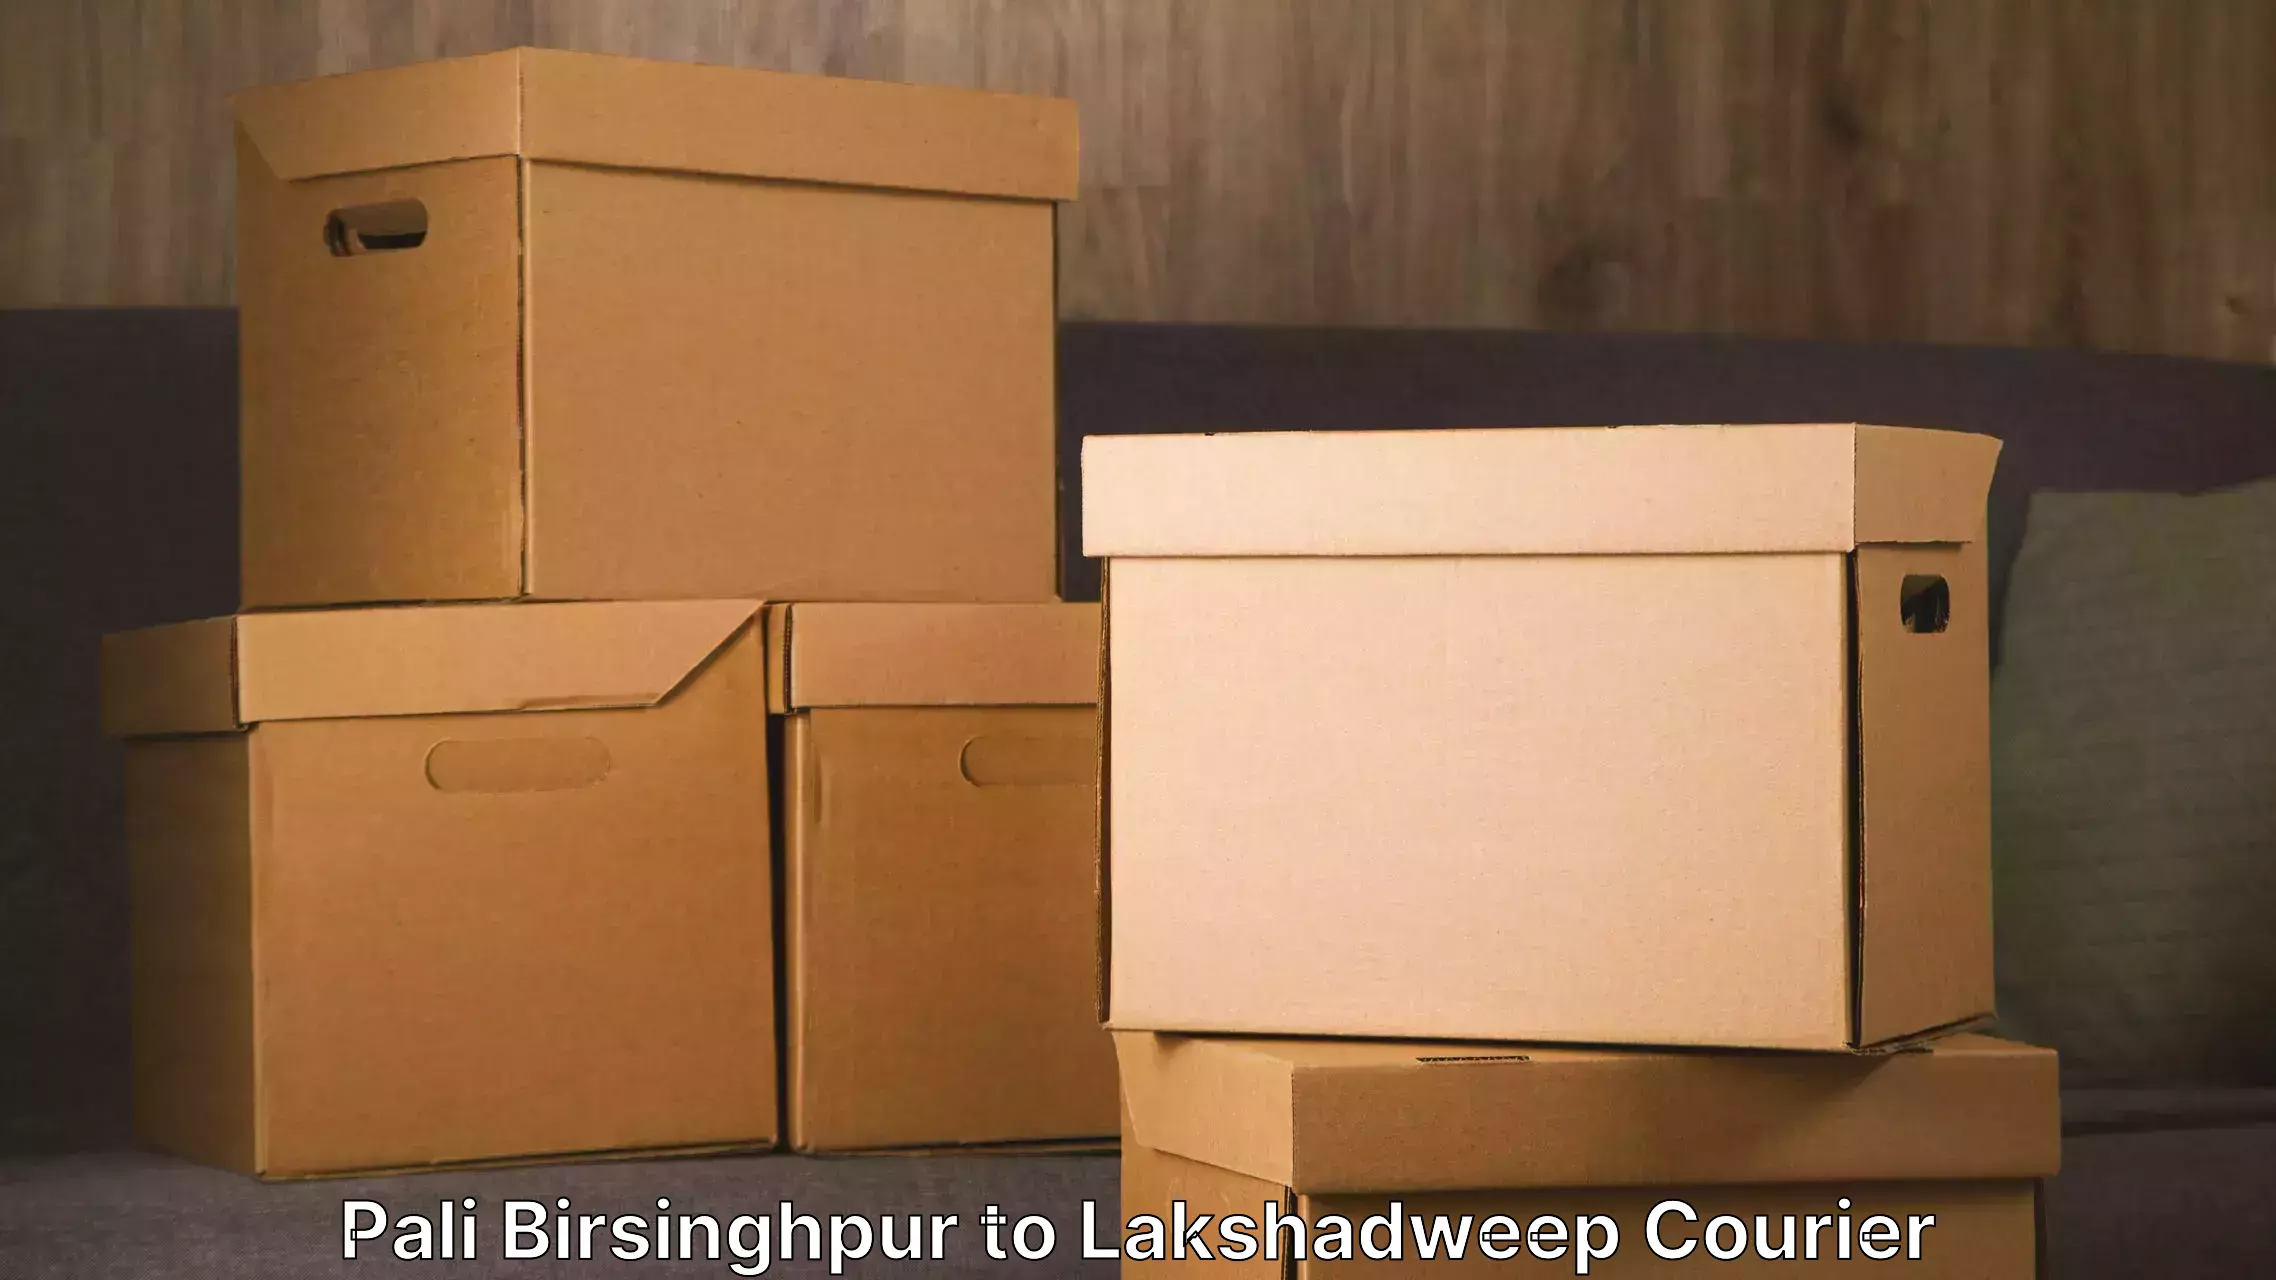 Door-to-door relocation services Pali Birsinghpur to Lakshadweep